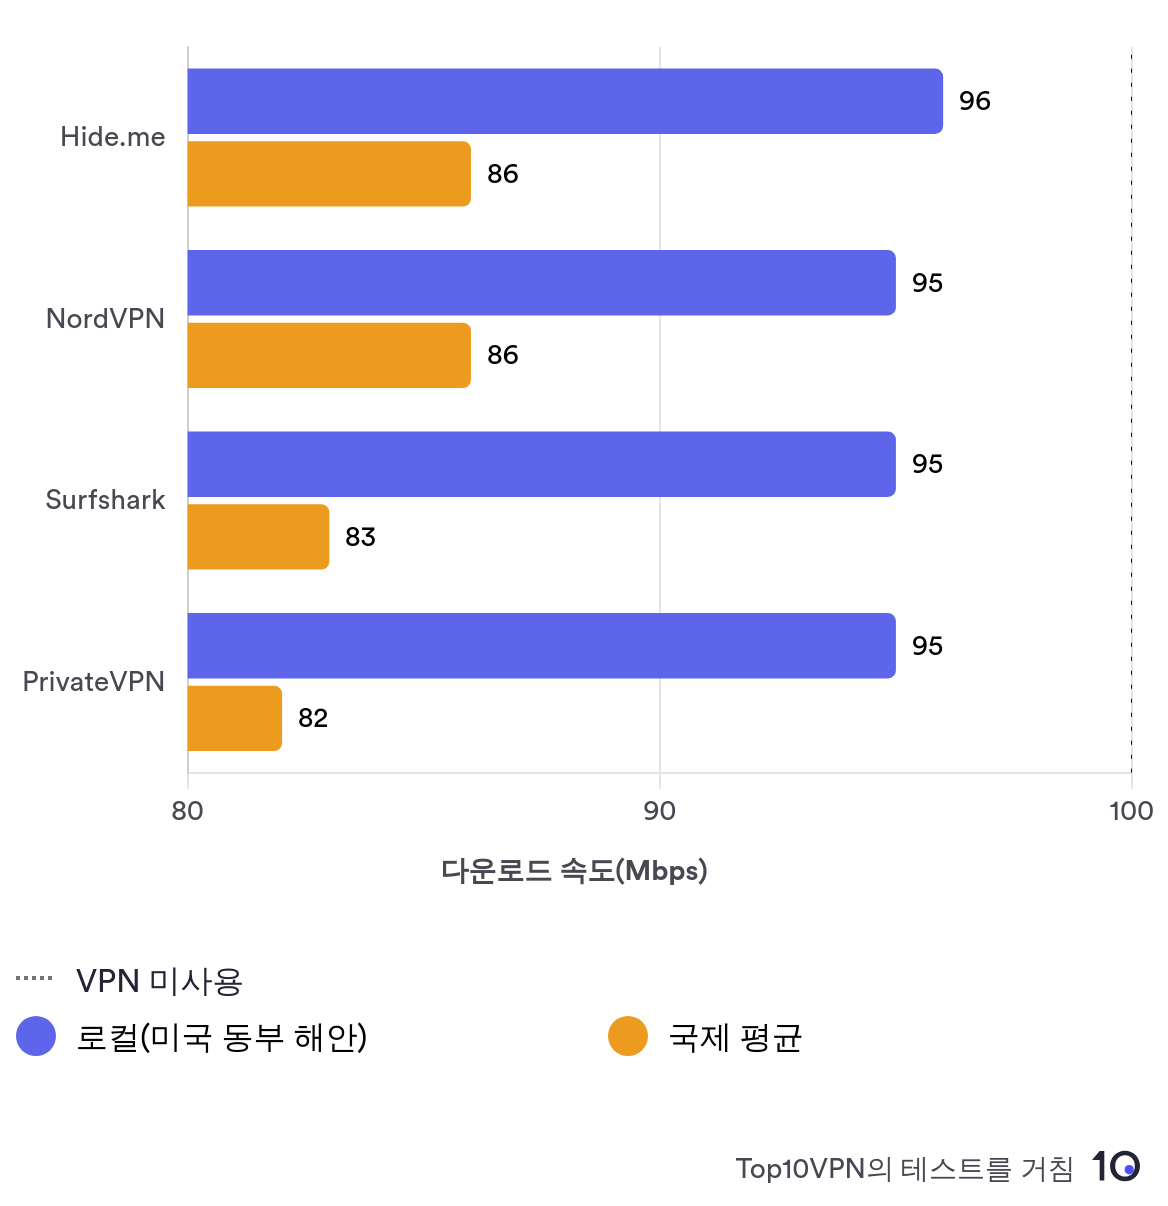 다른 주요 VPN 서비스와 비교하여 Hide.me의 로컬 속도 성능을 보여주는 비교 막대 차트.